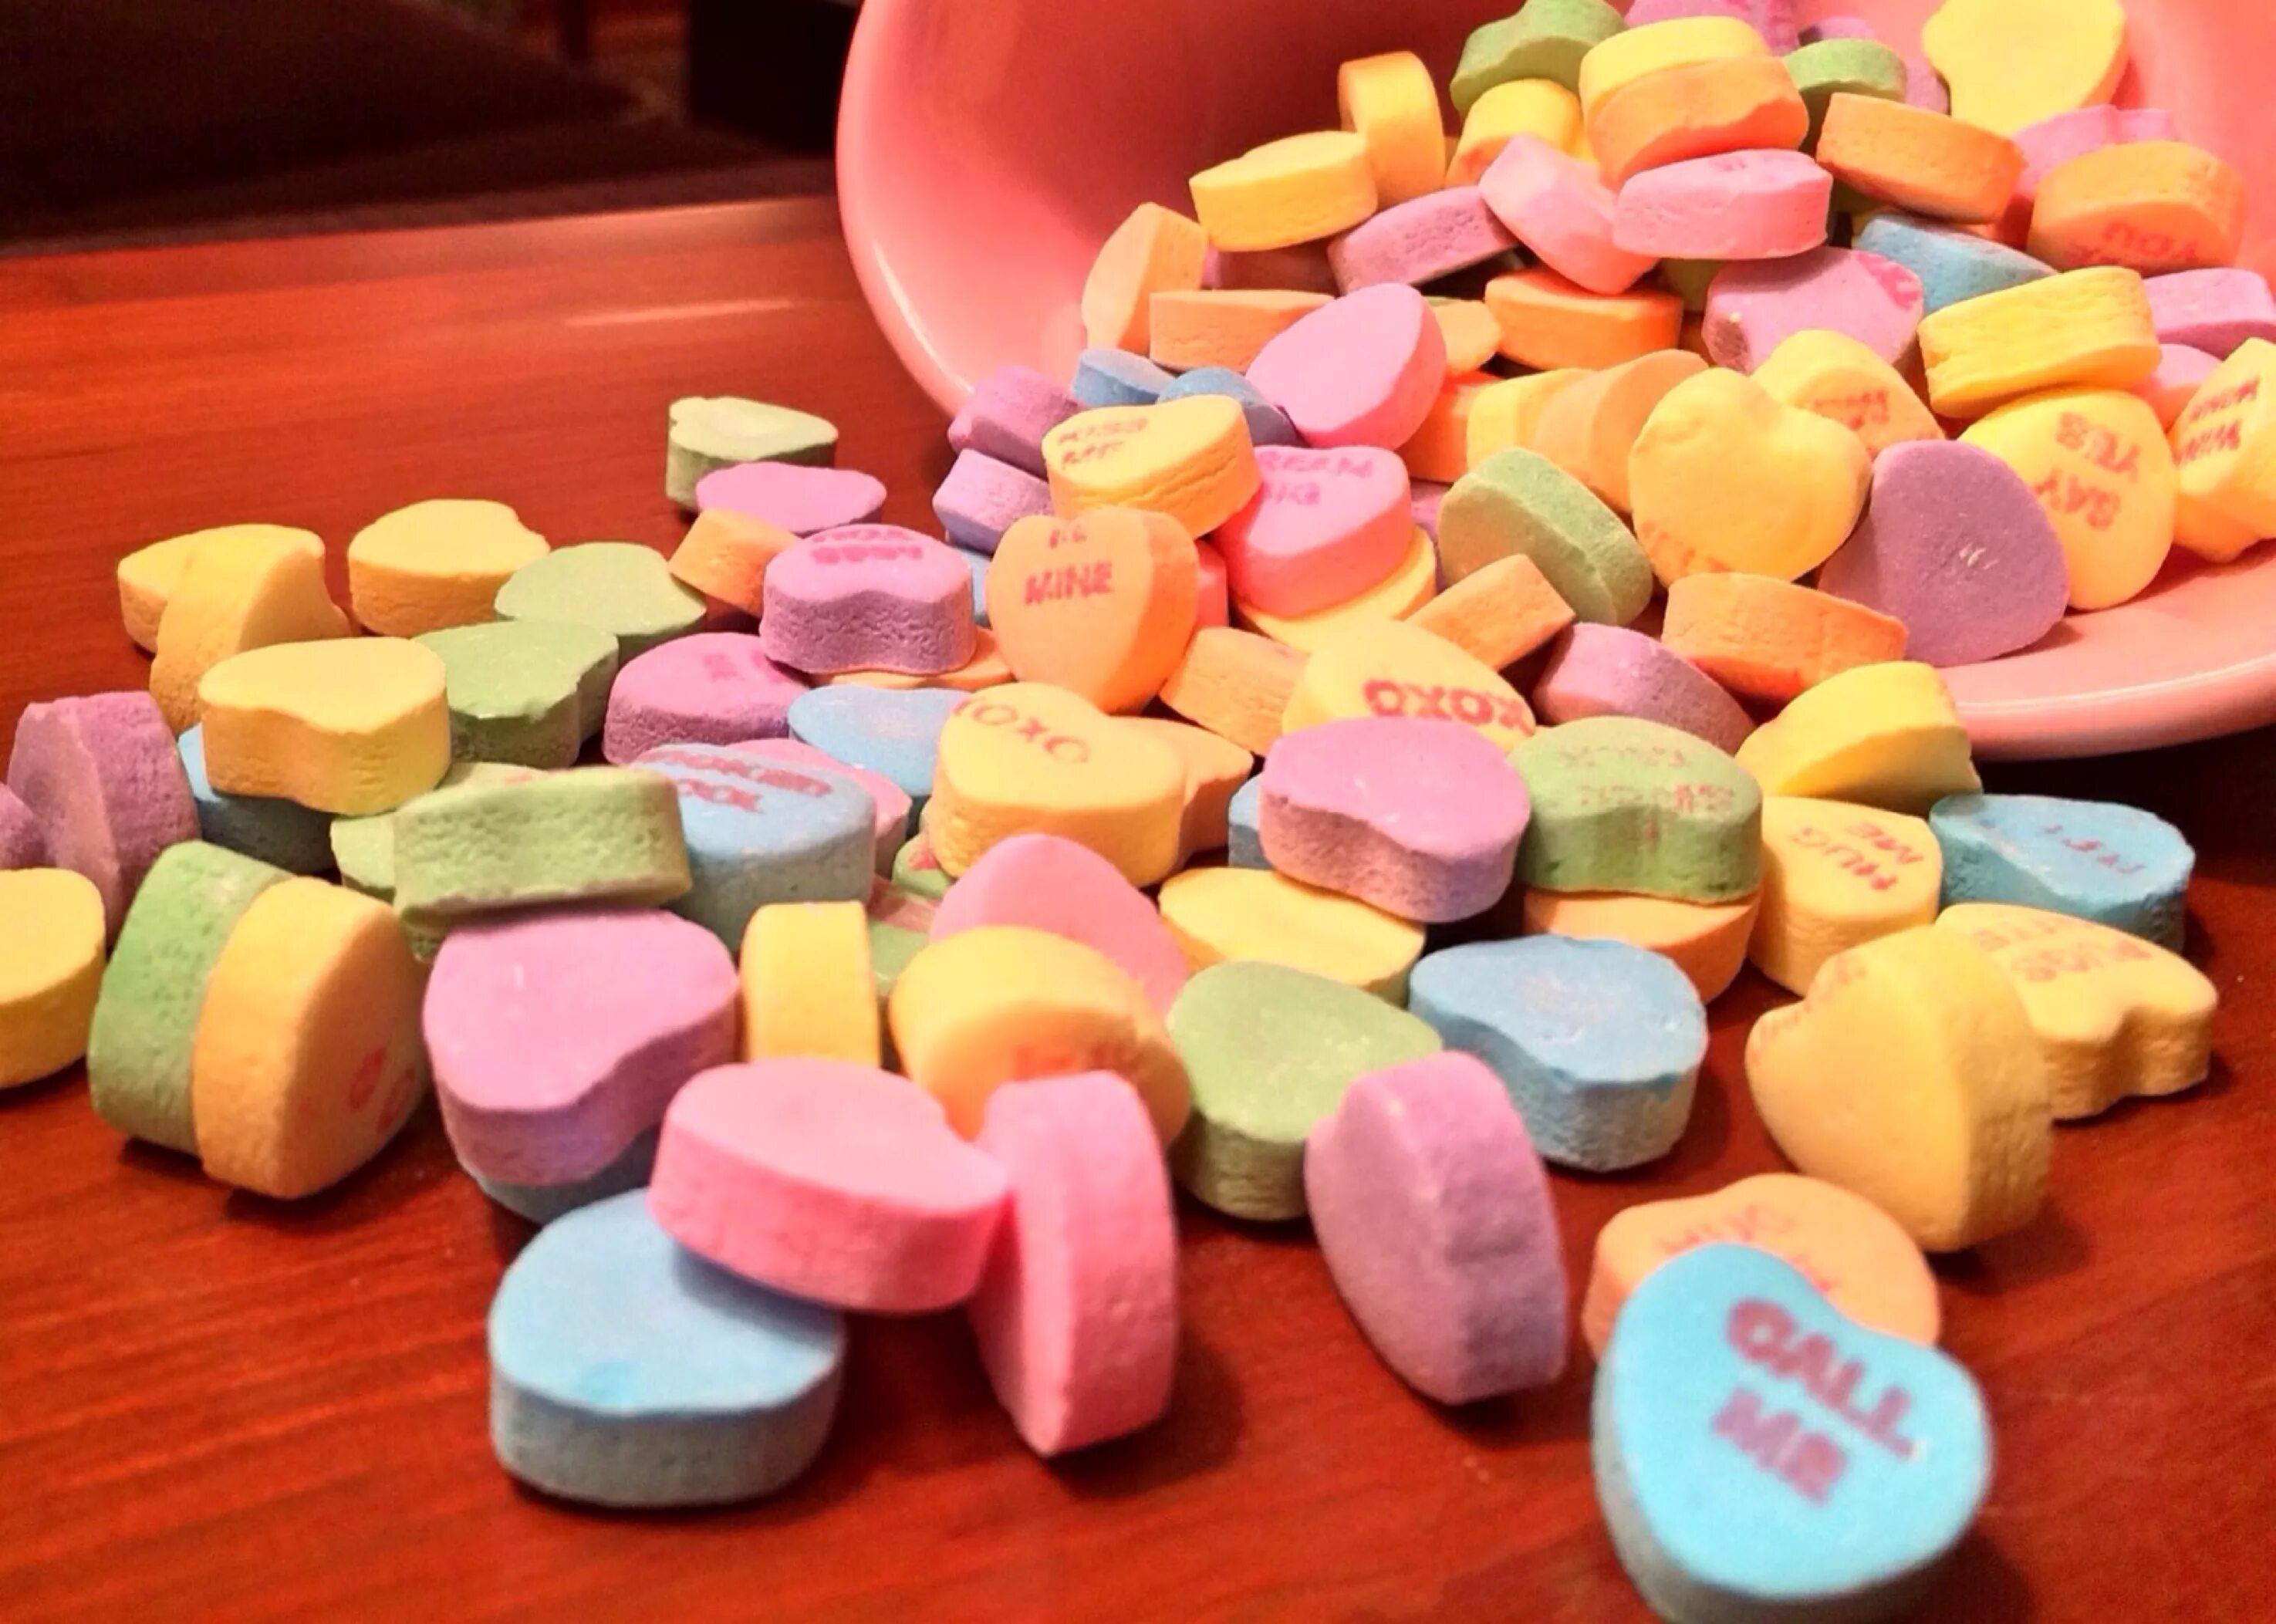 Цвета романтиков. Sweethearts конфеты. Радужное сердце десерт. Картинки люблю конфетки. Sweethearts конфеты Original.